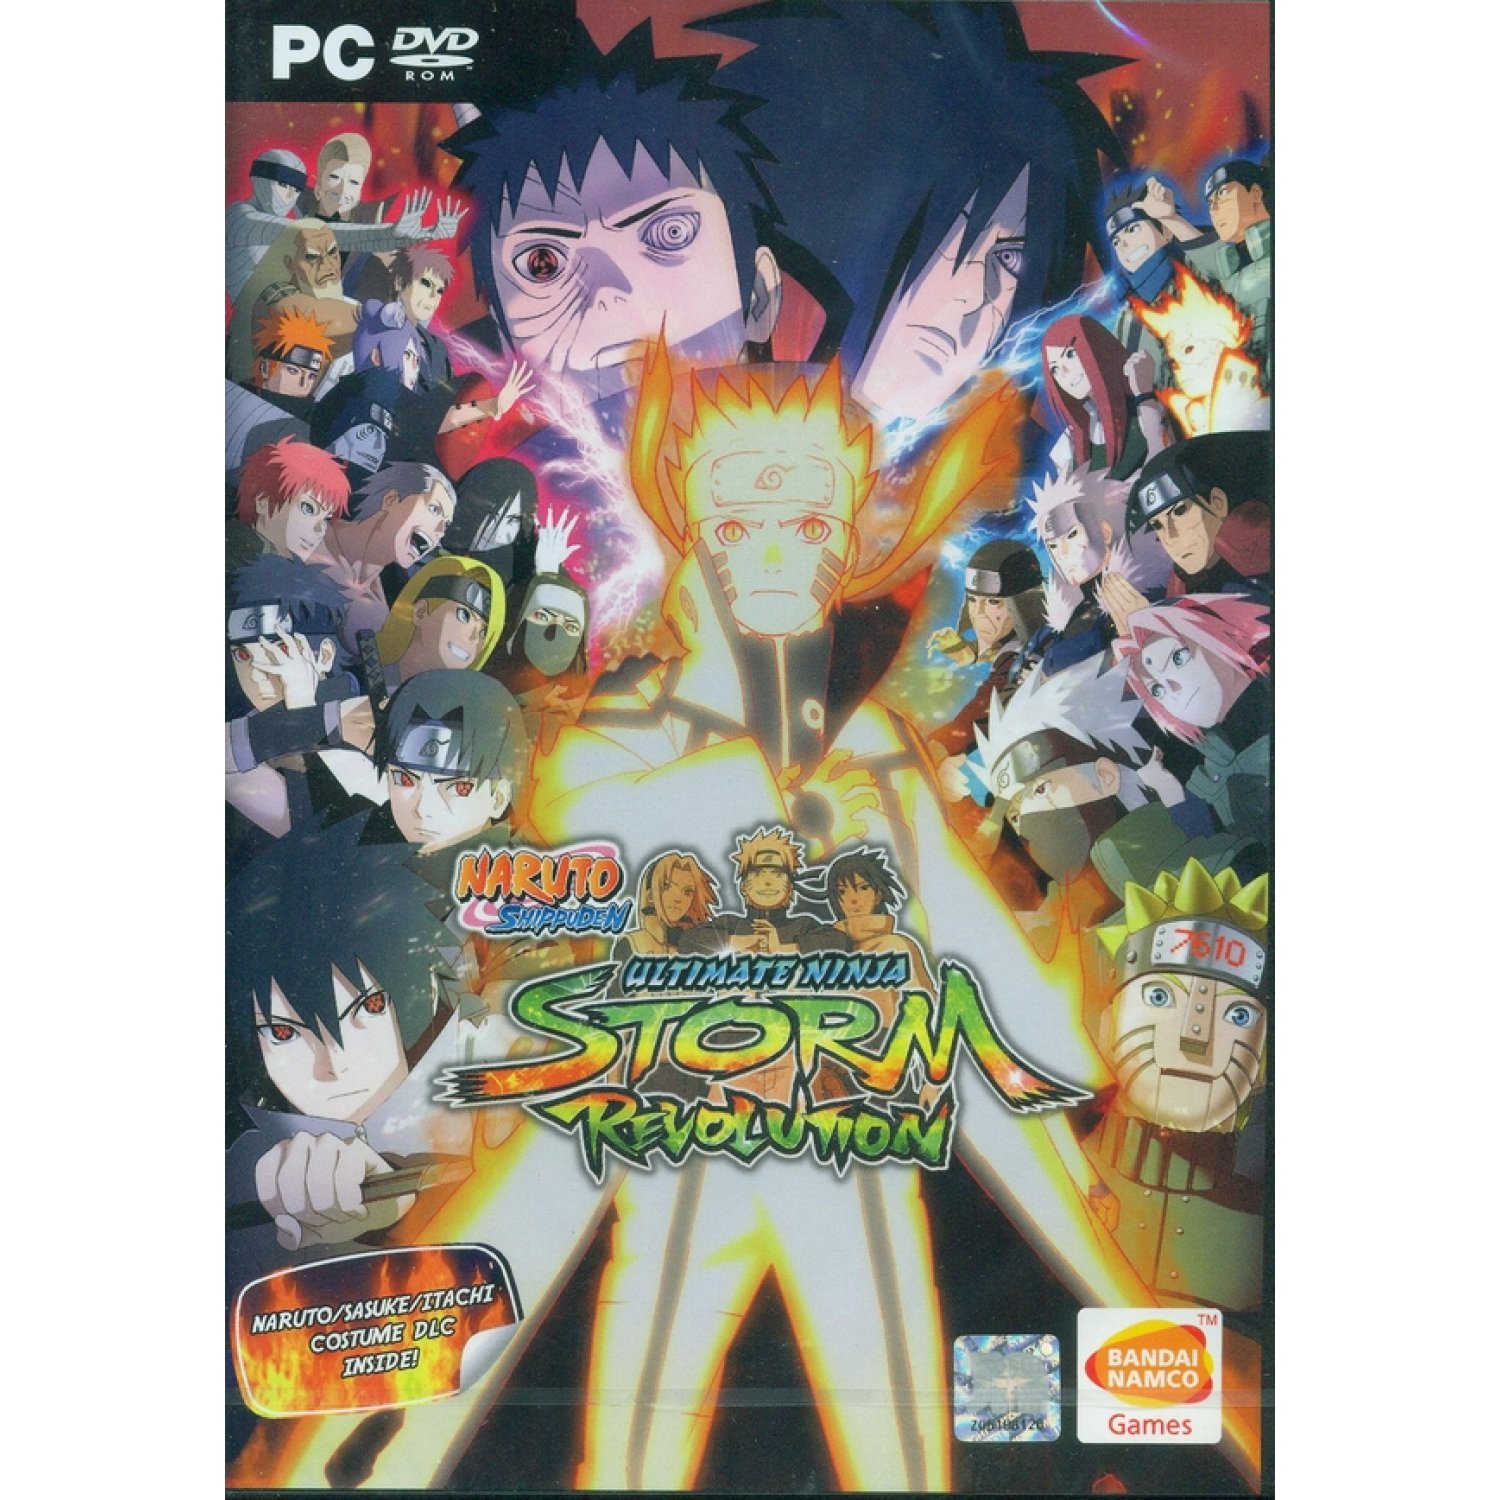 Download Naruto Revolution Pc